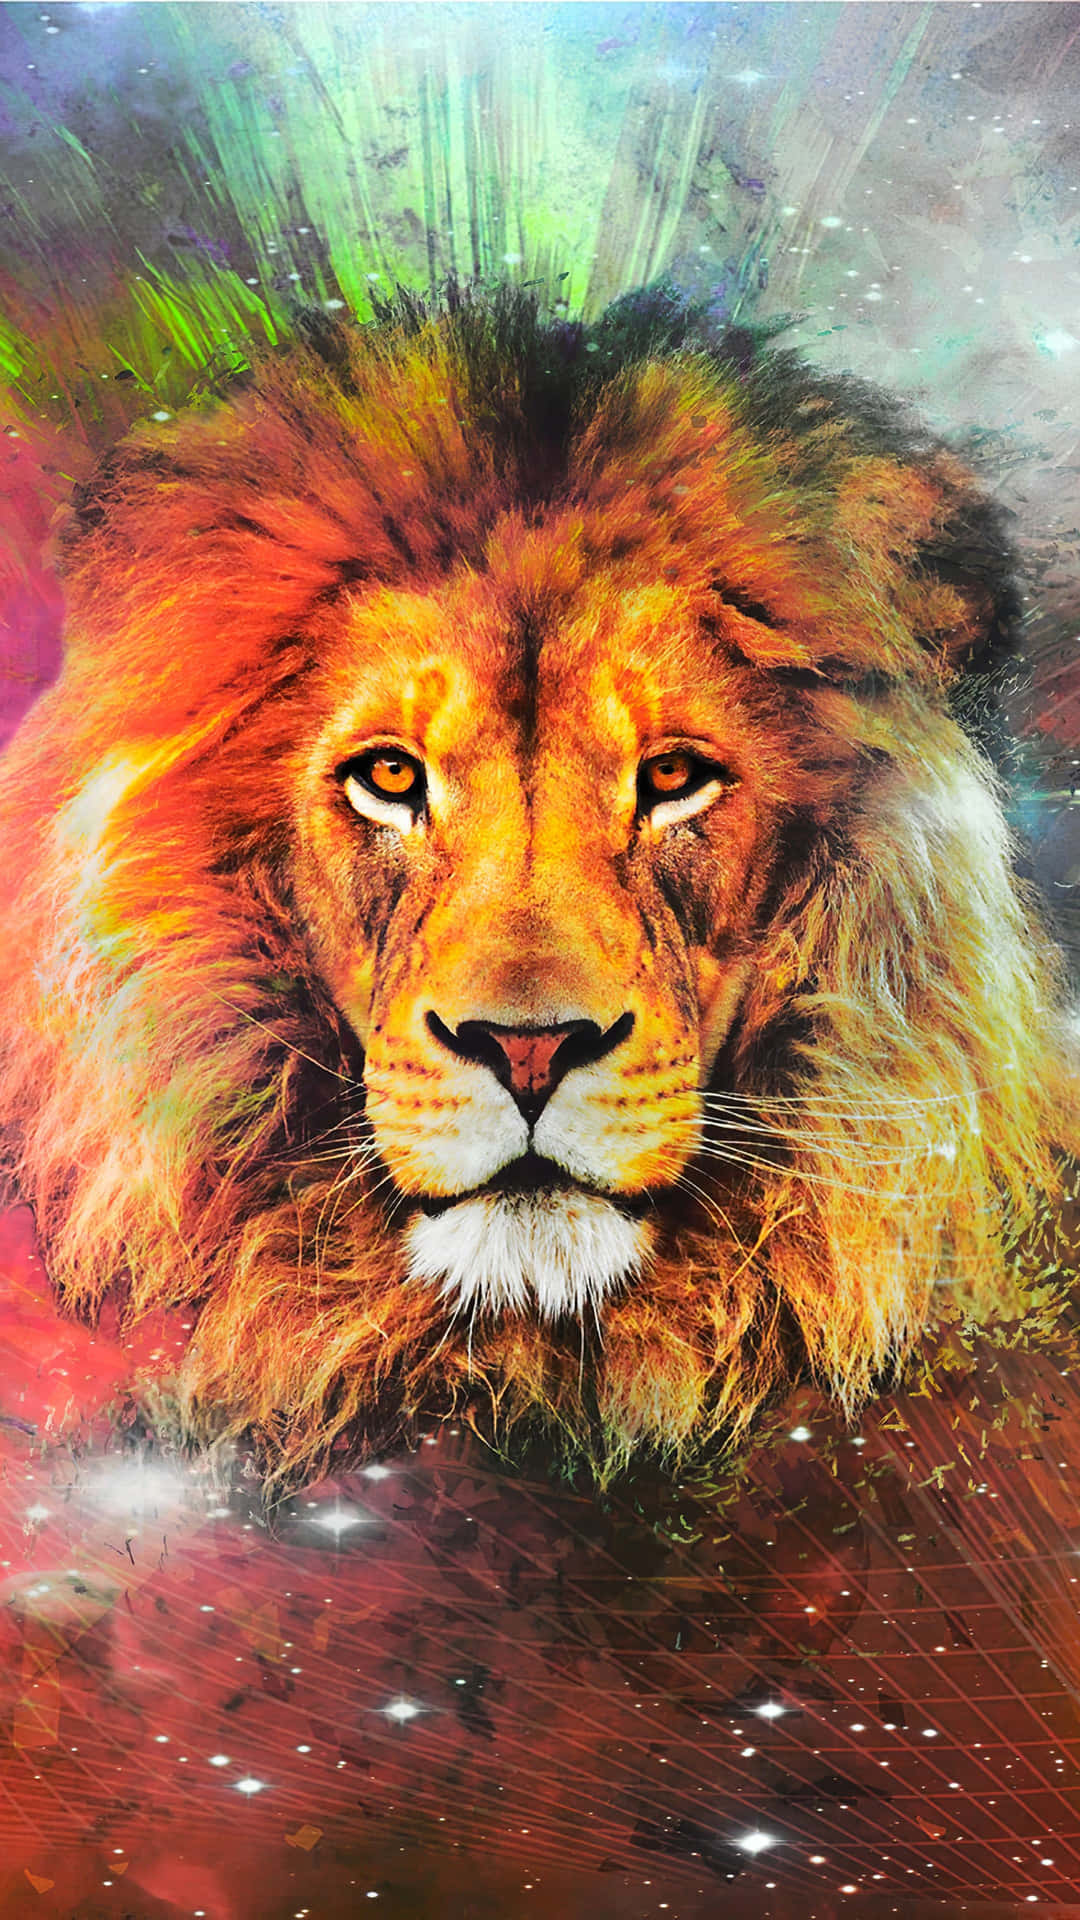 Den majestætiske løve af Juda.